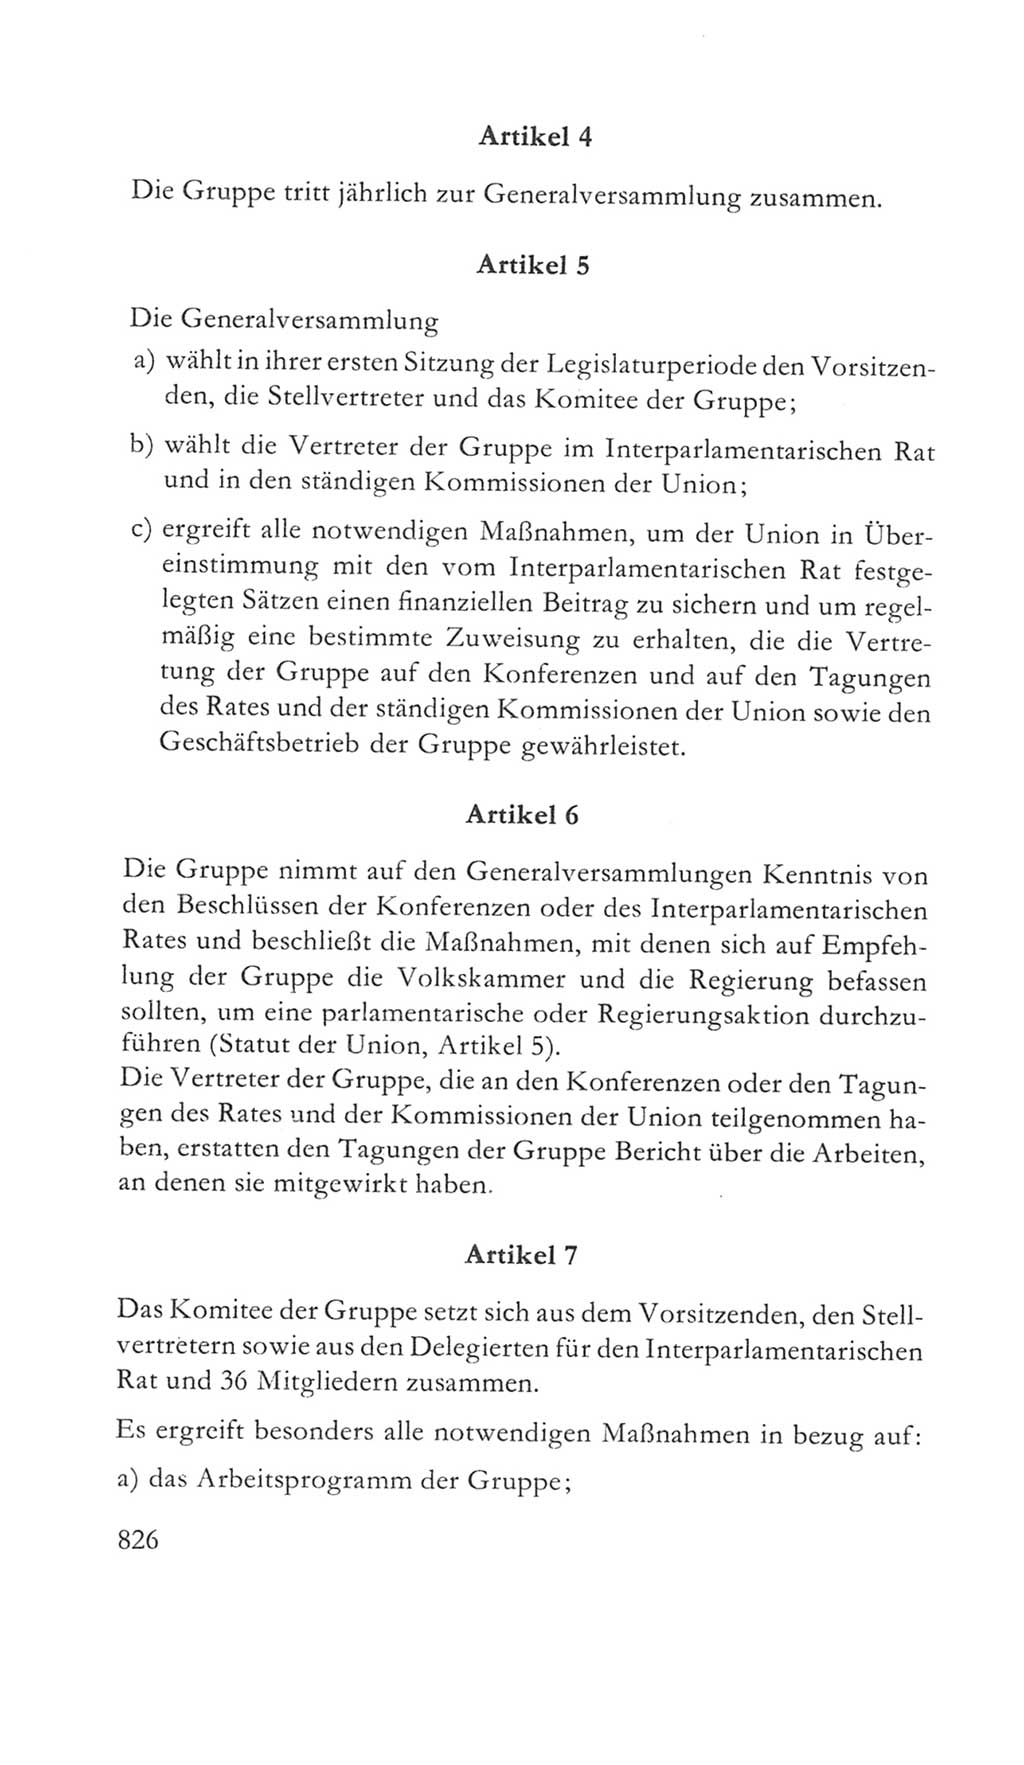 Volkskammer (VK) der Deutschen Demokratischen Republik (DDR) 5. Wahlperiode 1967-1971, Seite 826 (VK. DDR 5. WP. 1967-1971, S. 826)